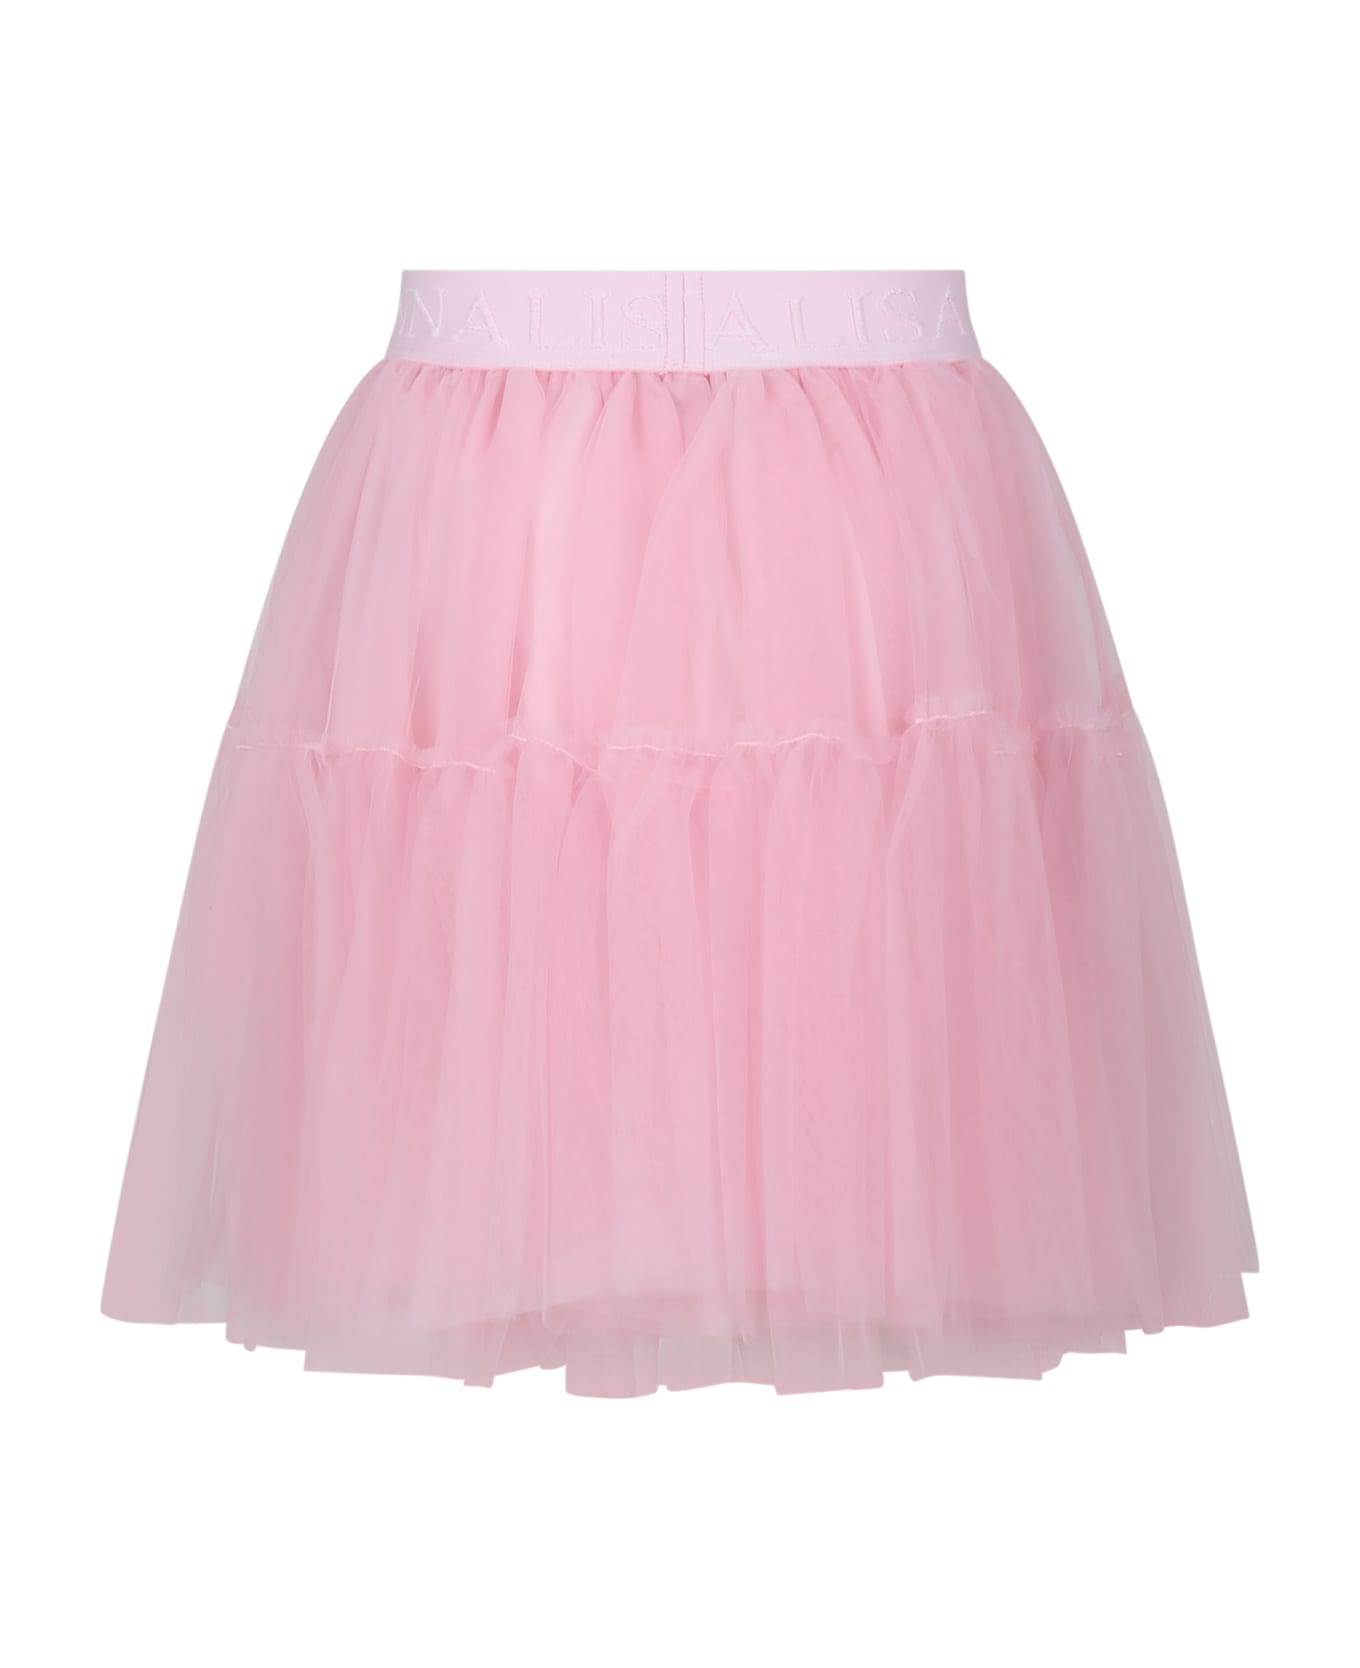 Monnalisa Pink Elegant Tulle Skirt For Girl - Pink